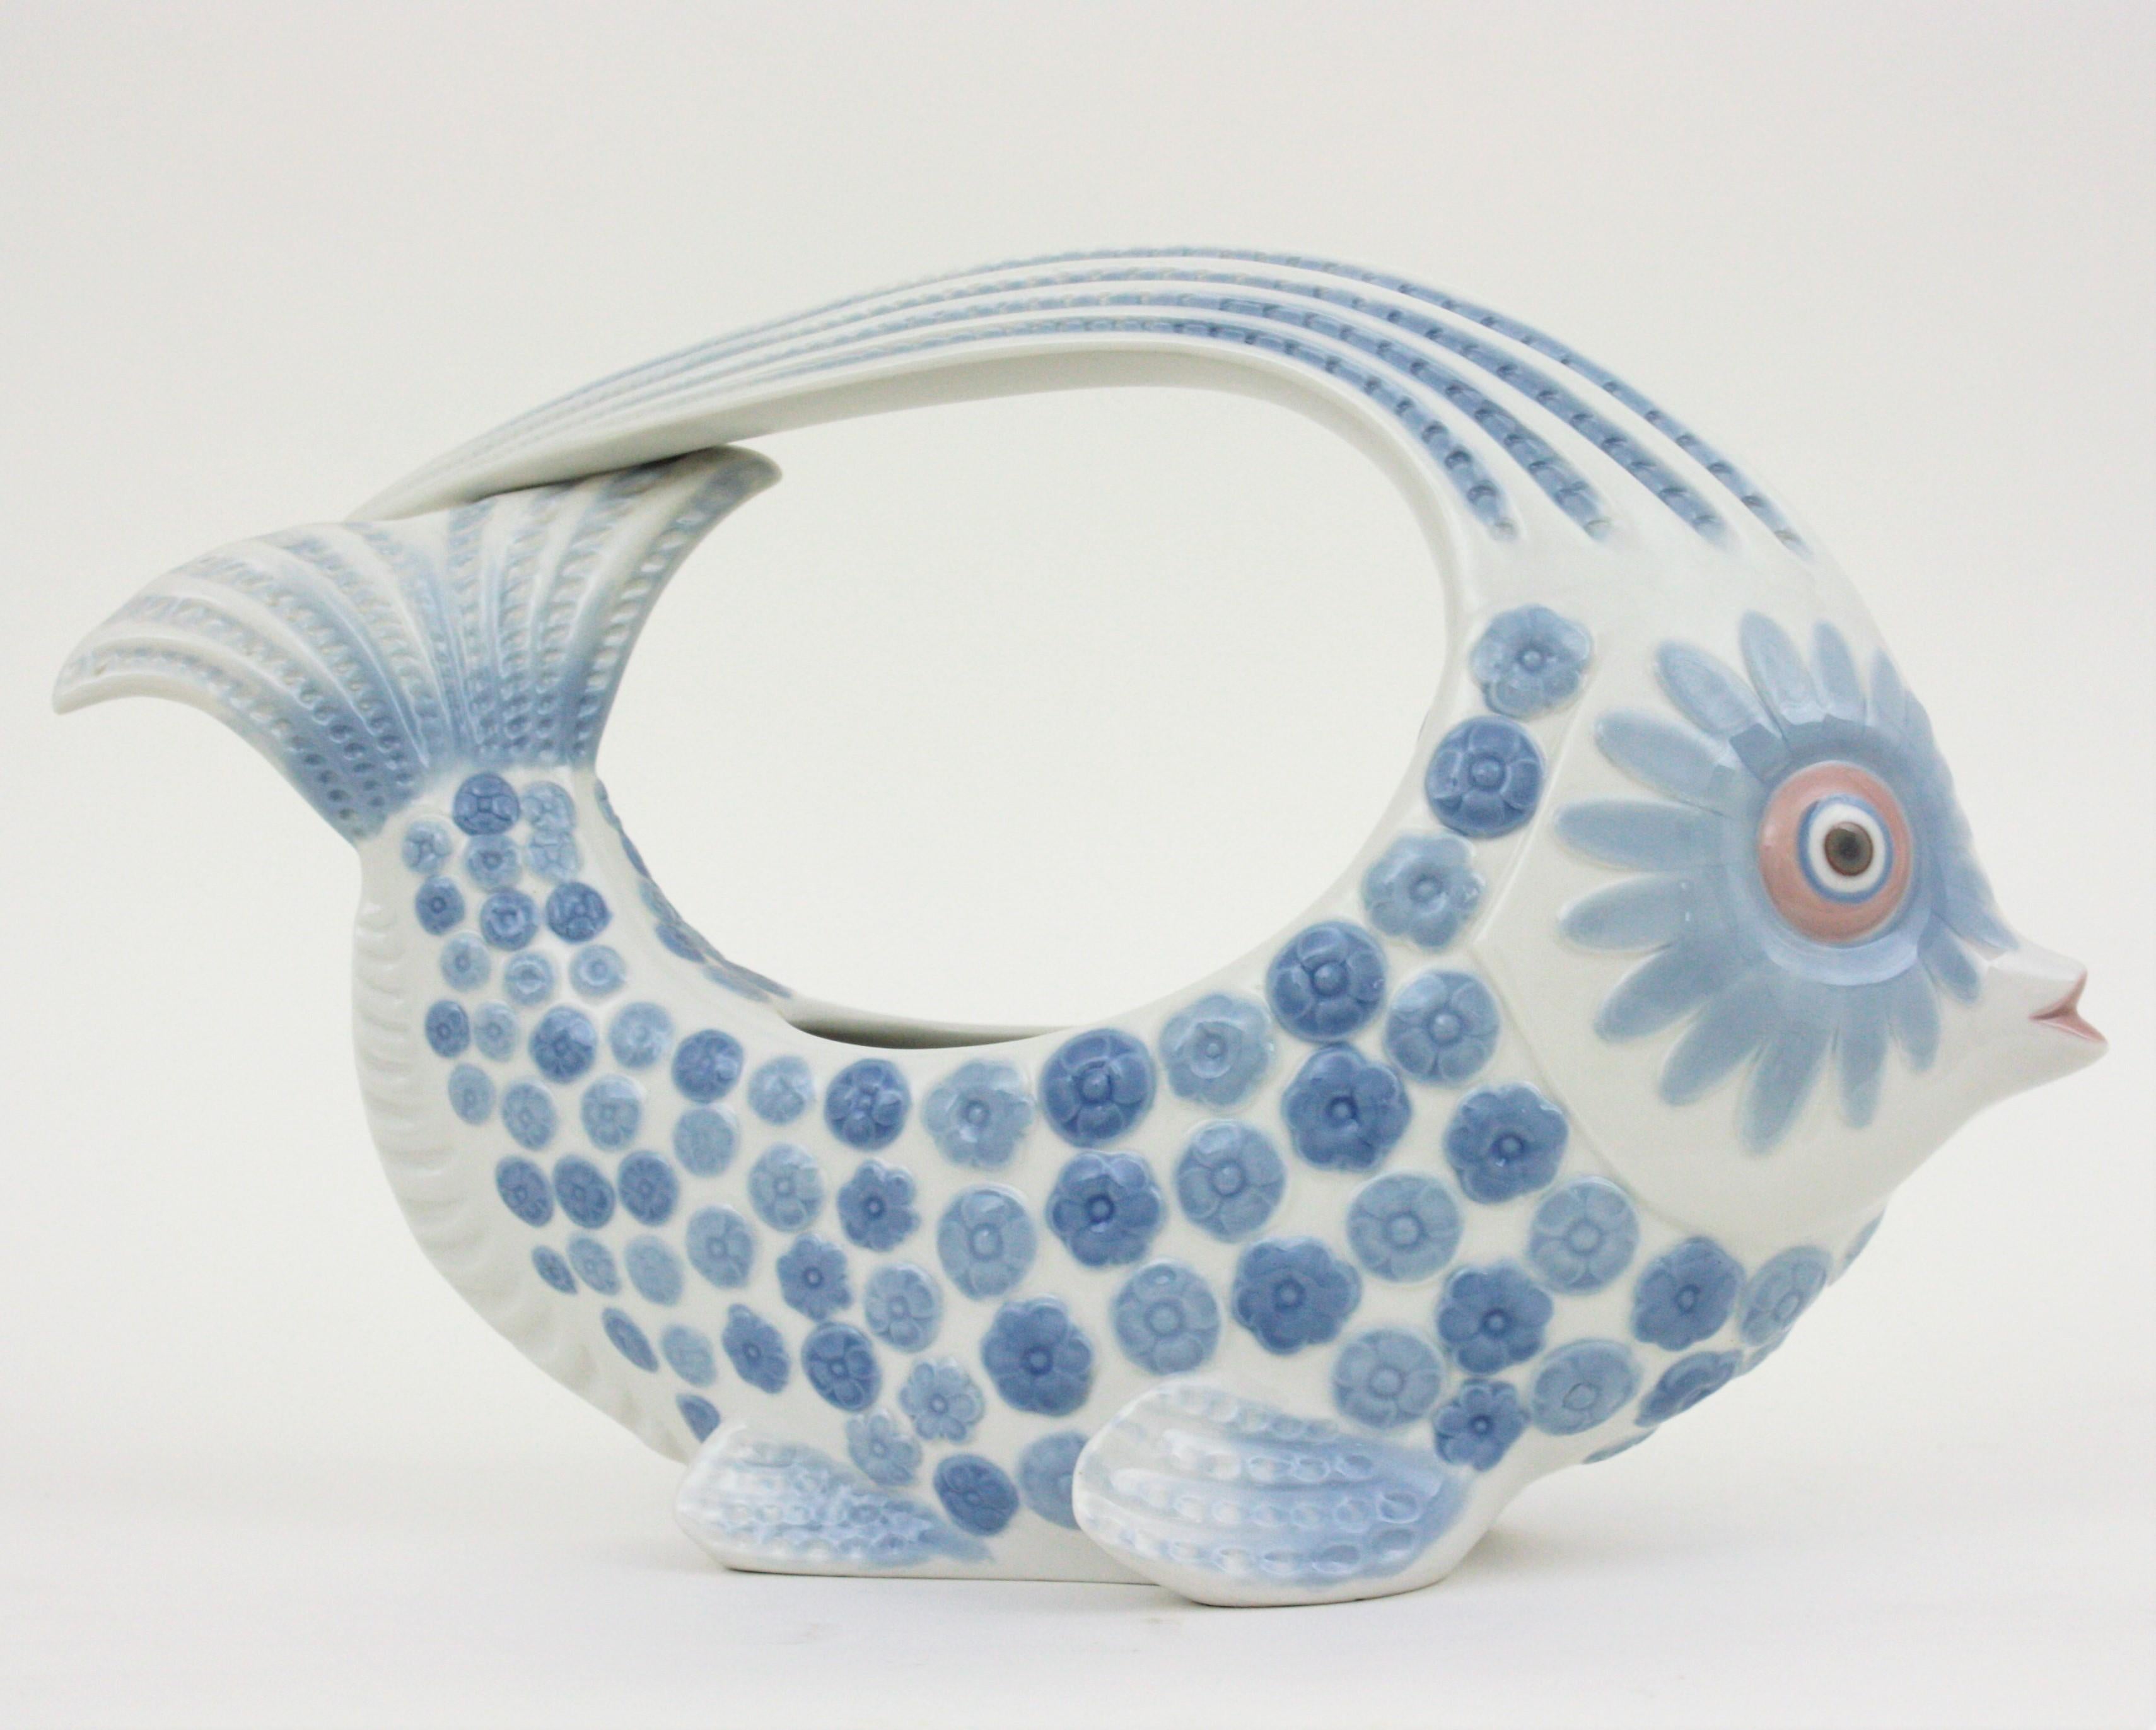 Magnifique vase ou centre de table en porcelaine colorée représentant un poisson, conçu par Vicente Martinez et fabriqué par Lladró.
Il peut également être utilisé comme bac à plantes.
Le design et les tons bleus rendent ce centre de table très